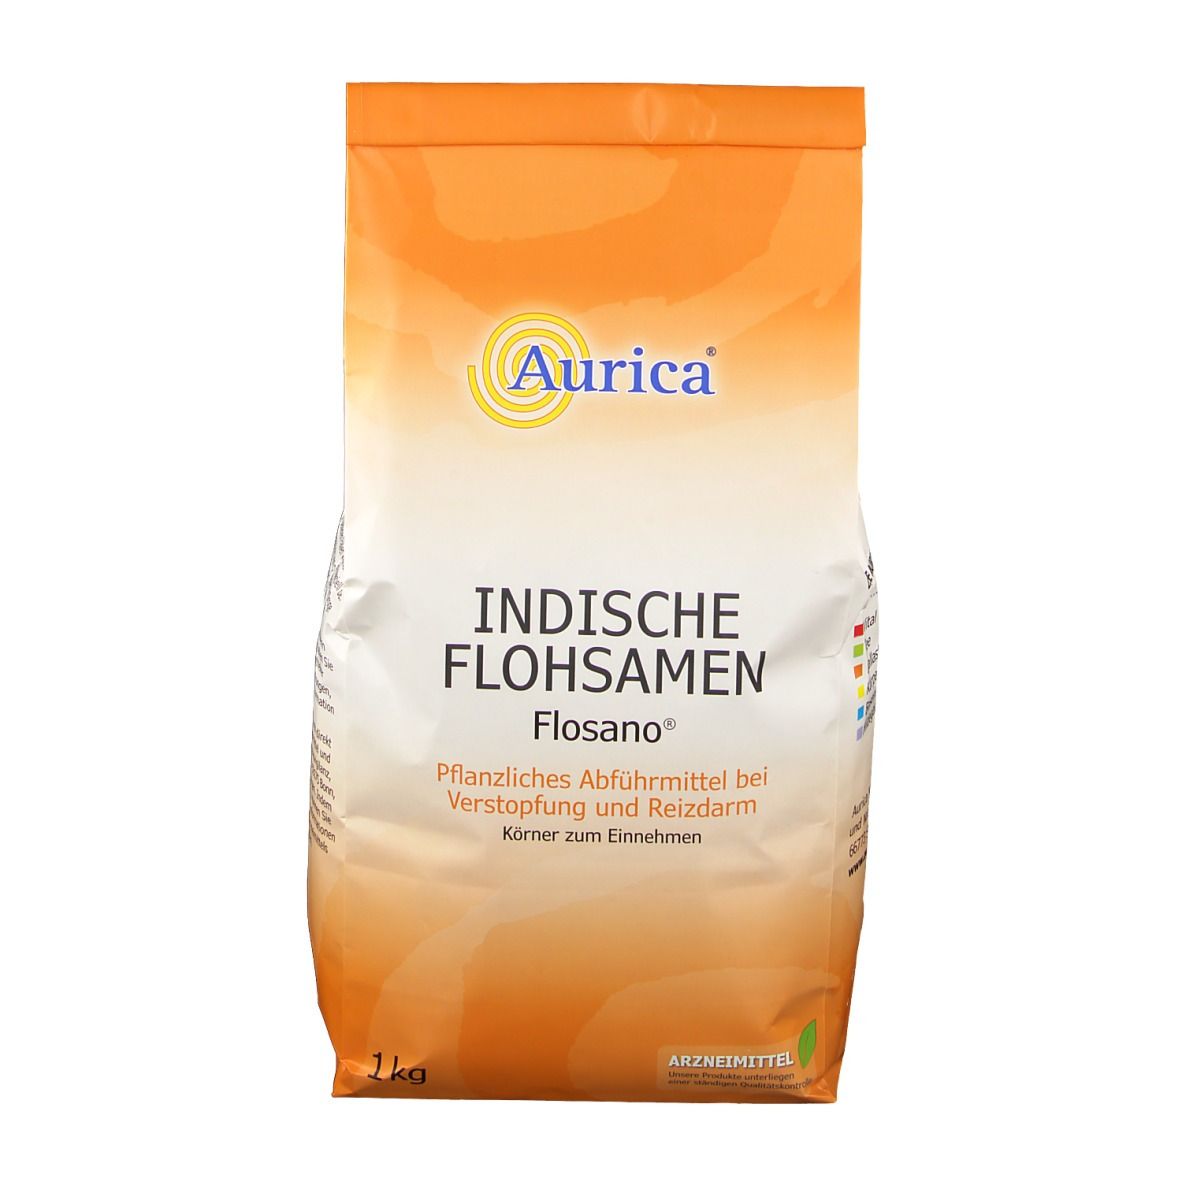 Aurica® Indische Flohsamen Flosano®